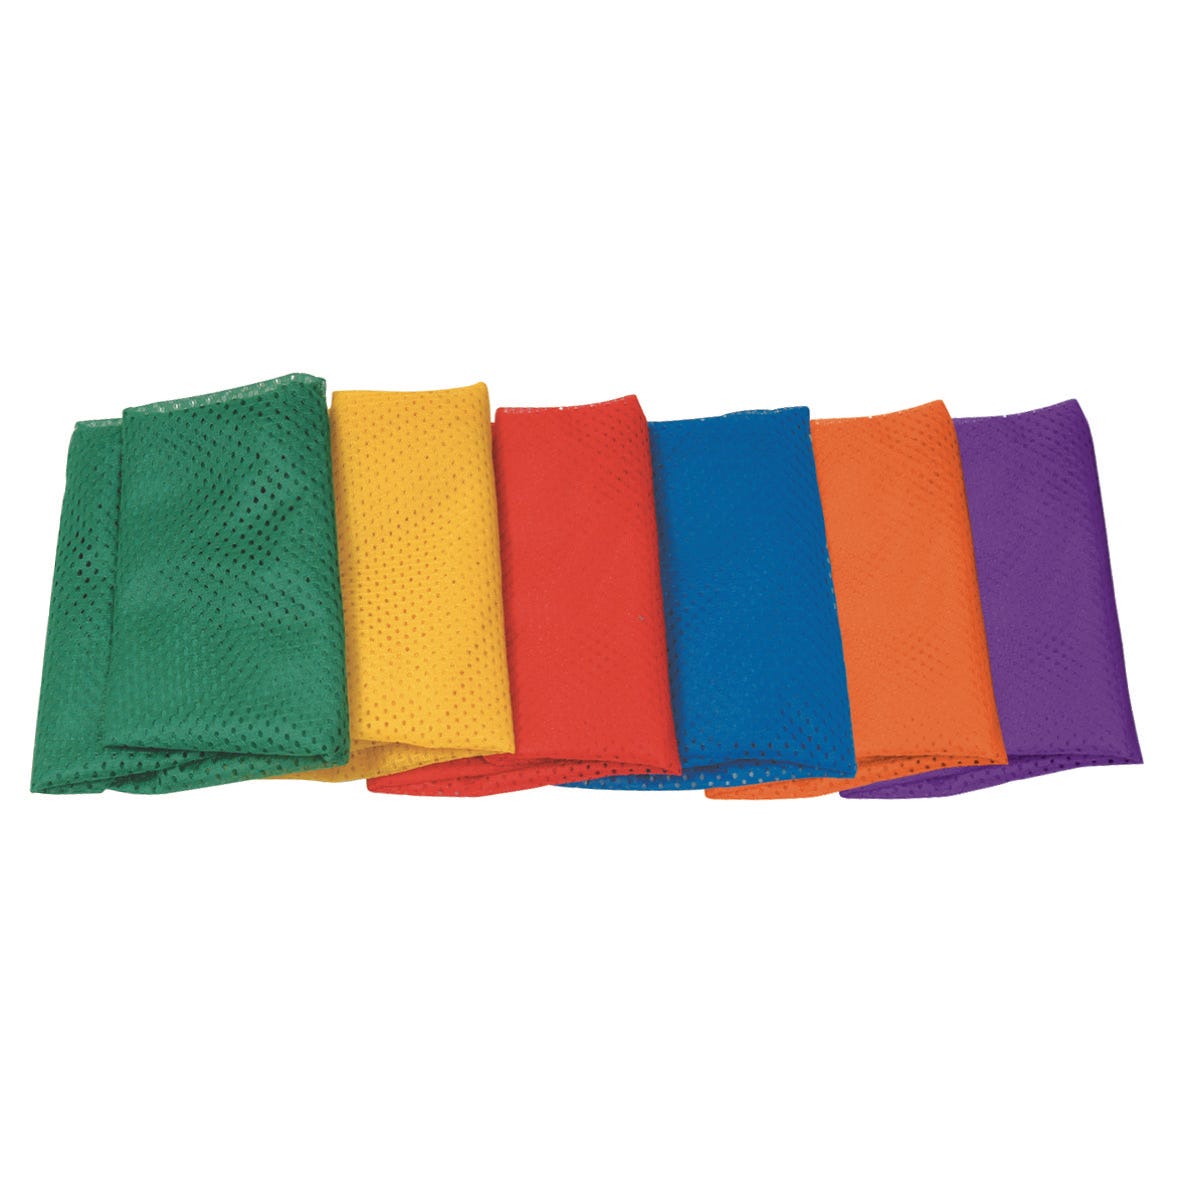 Standard-MESH™ Bags